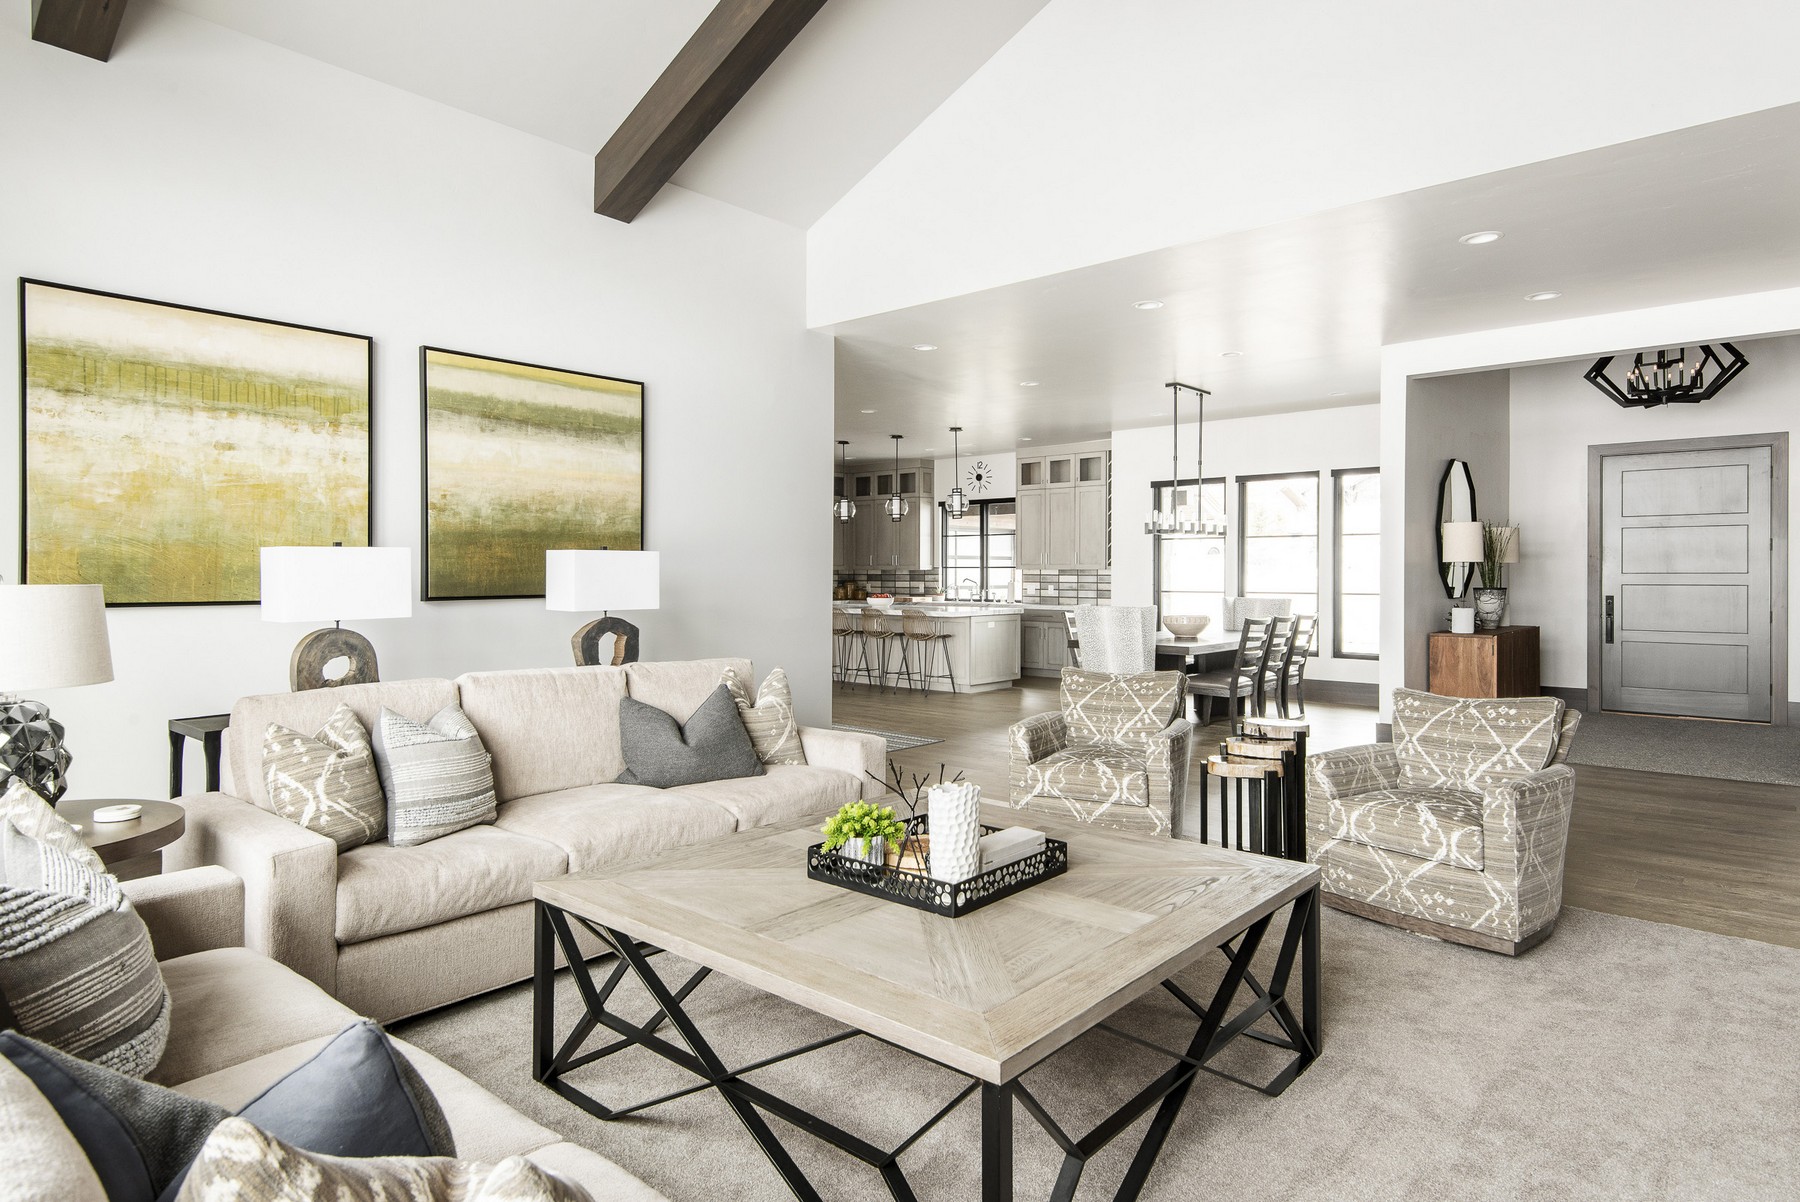 Creatice Home Interior Design Utah for Simple Design